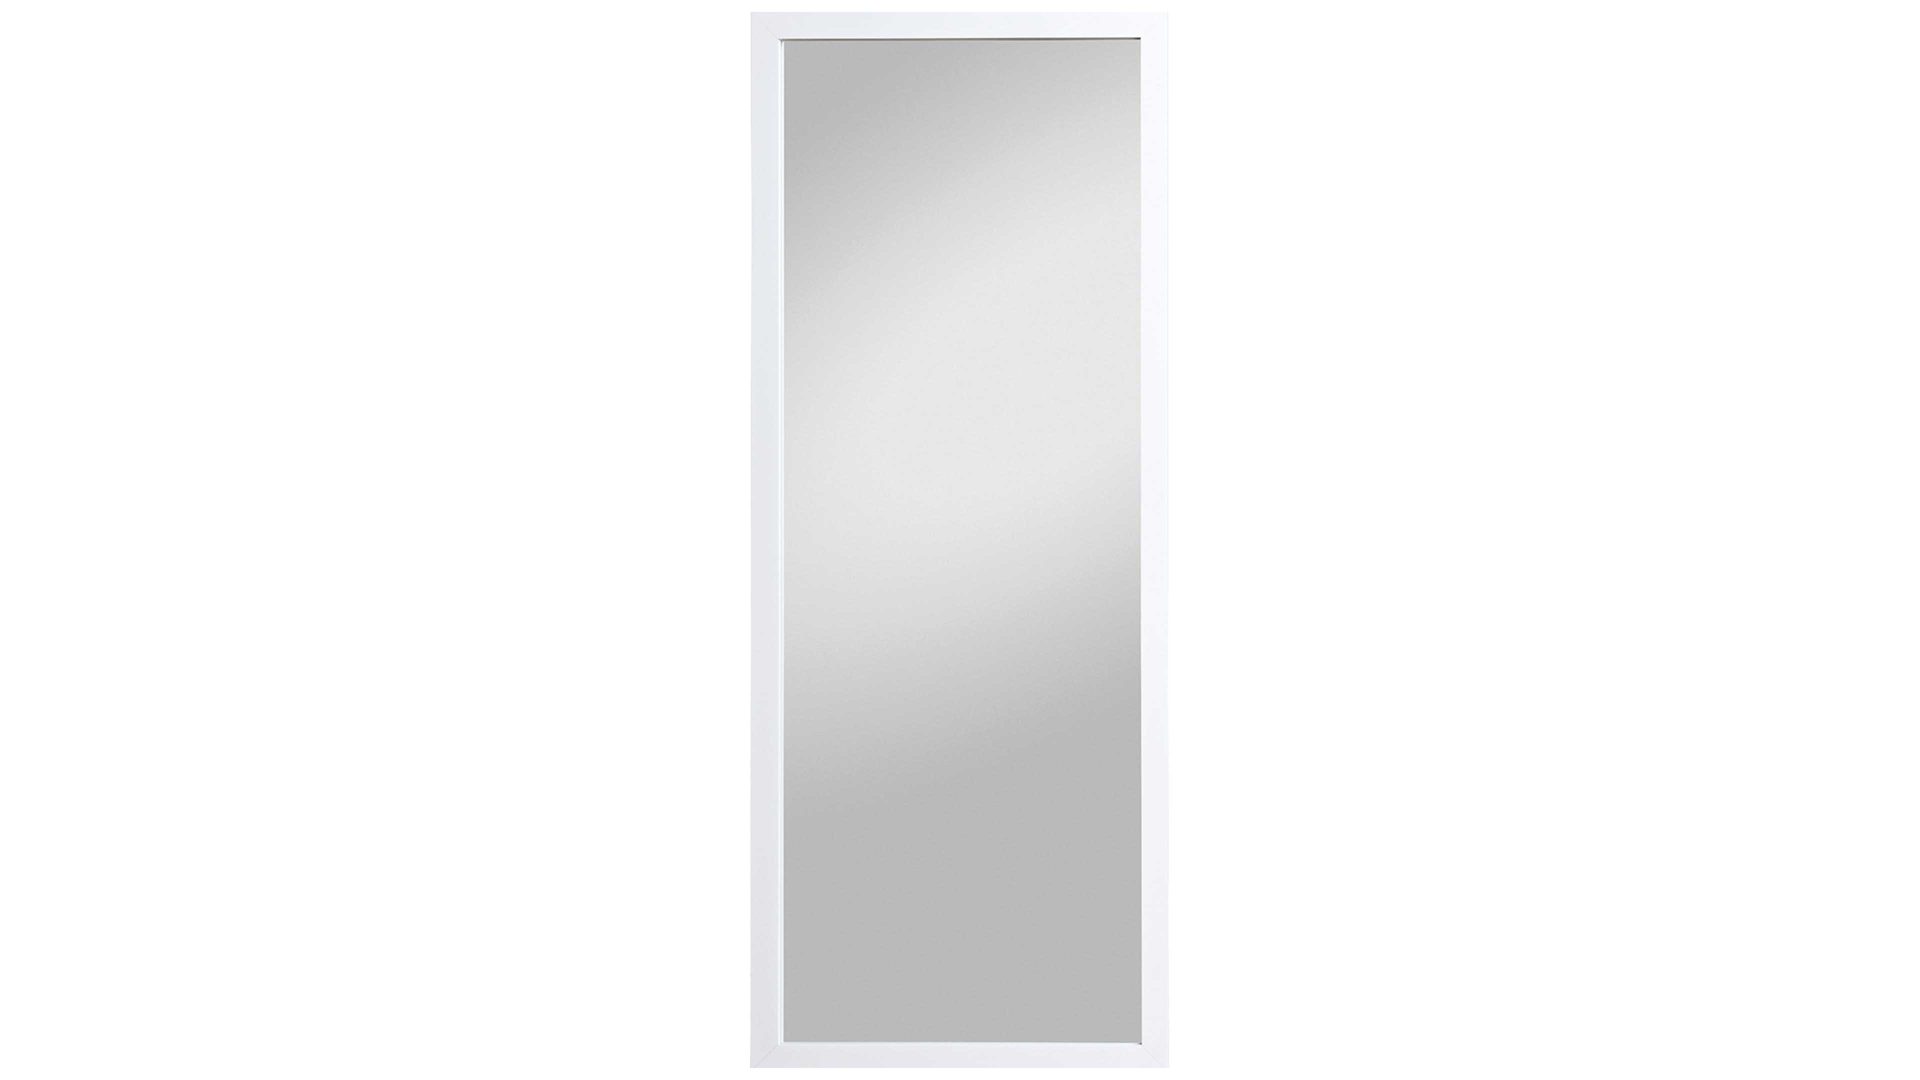 Wandspiegel Spiegelprofi aus Spiegel in Weiß Rahmenspiegel Kathi glänzender weißer Rahmen – ca. 66 x 166 cm